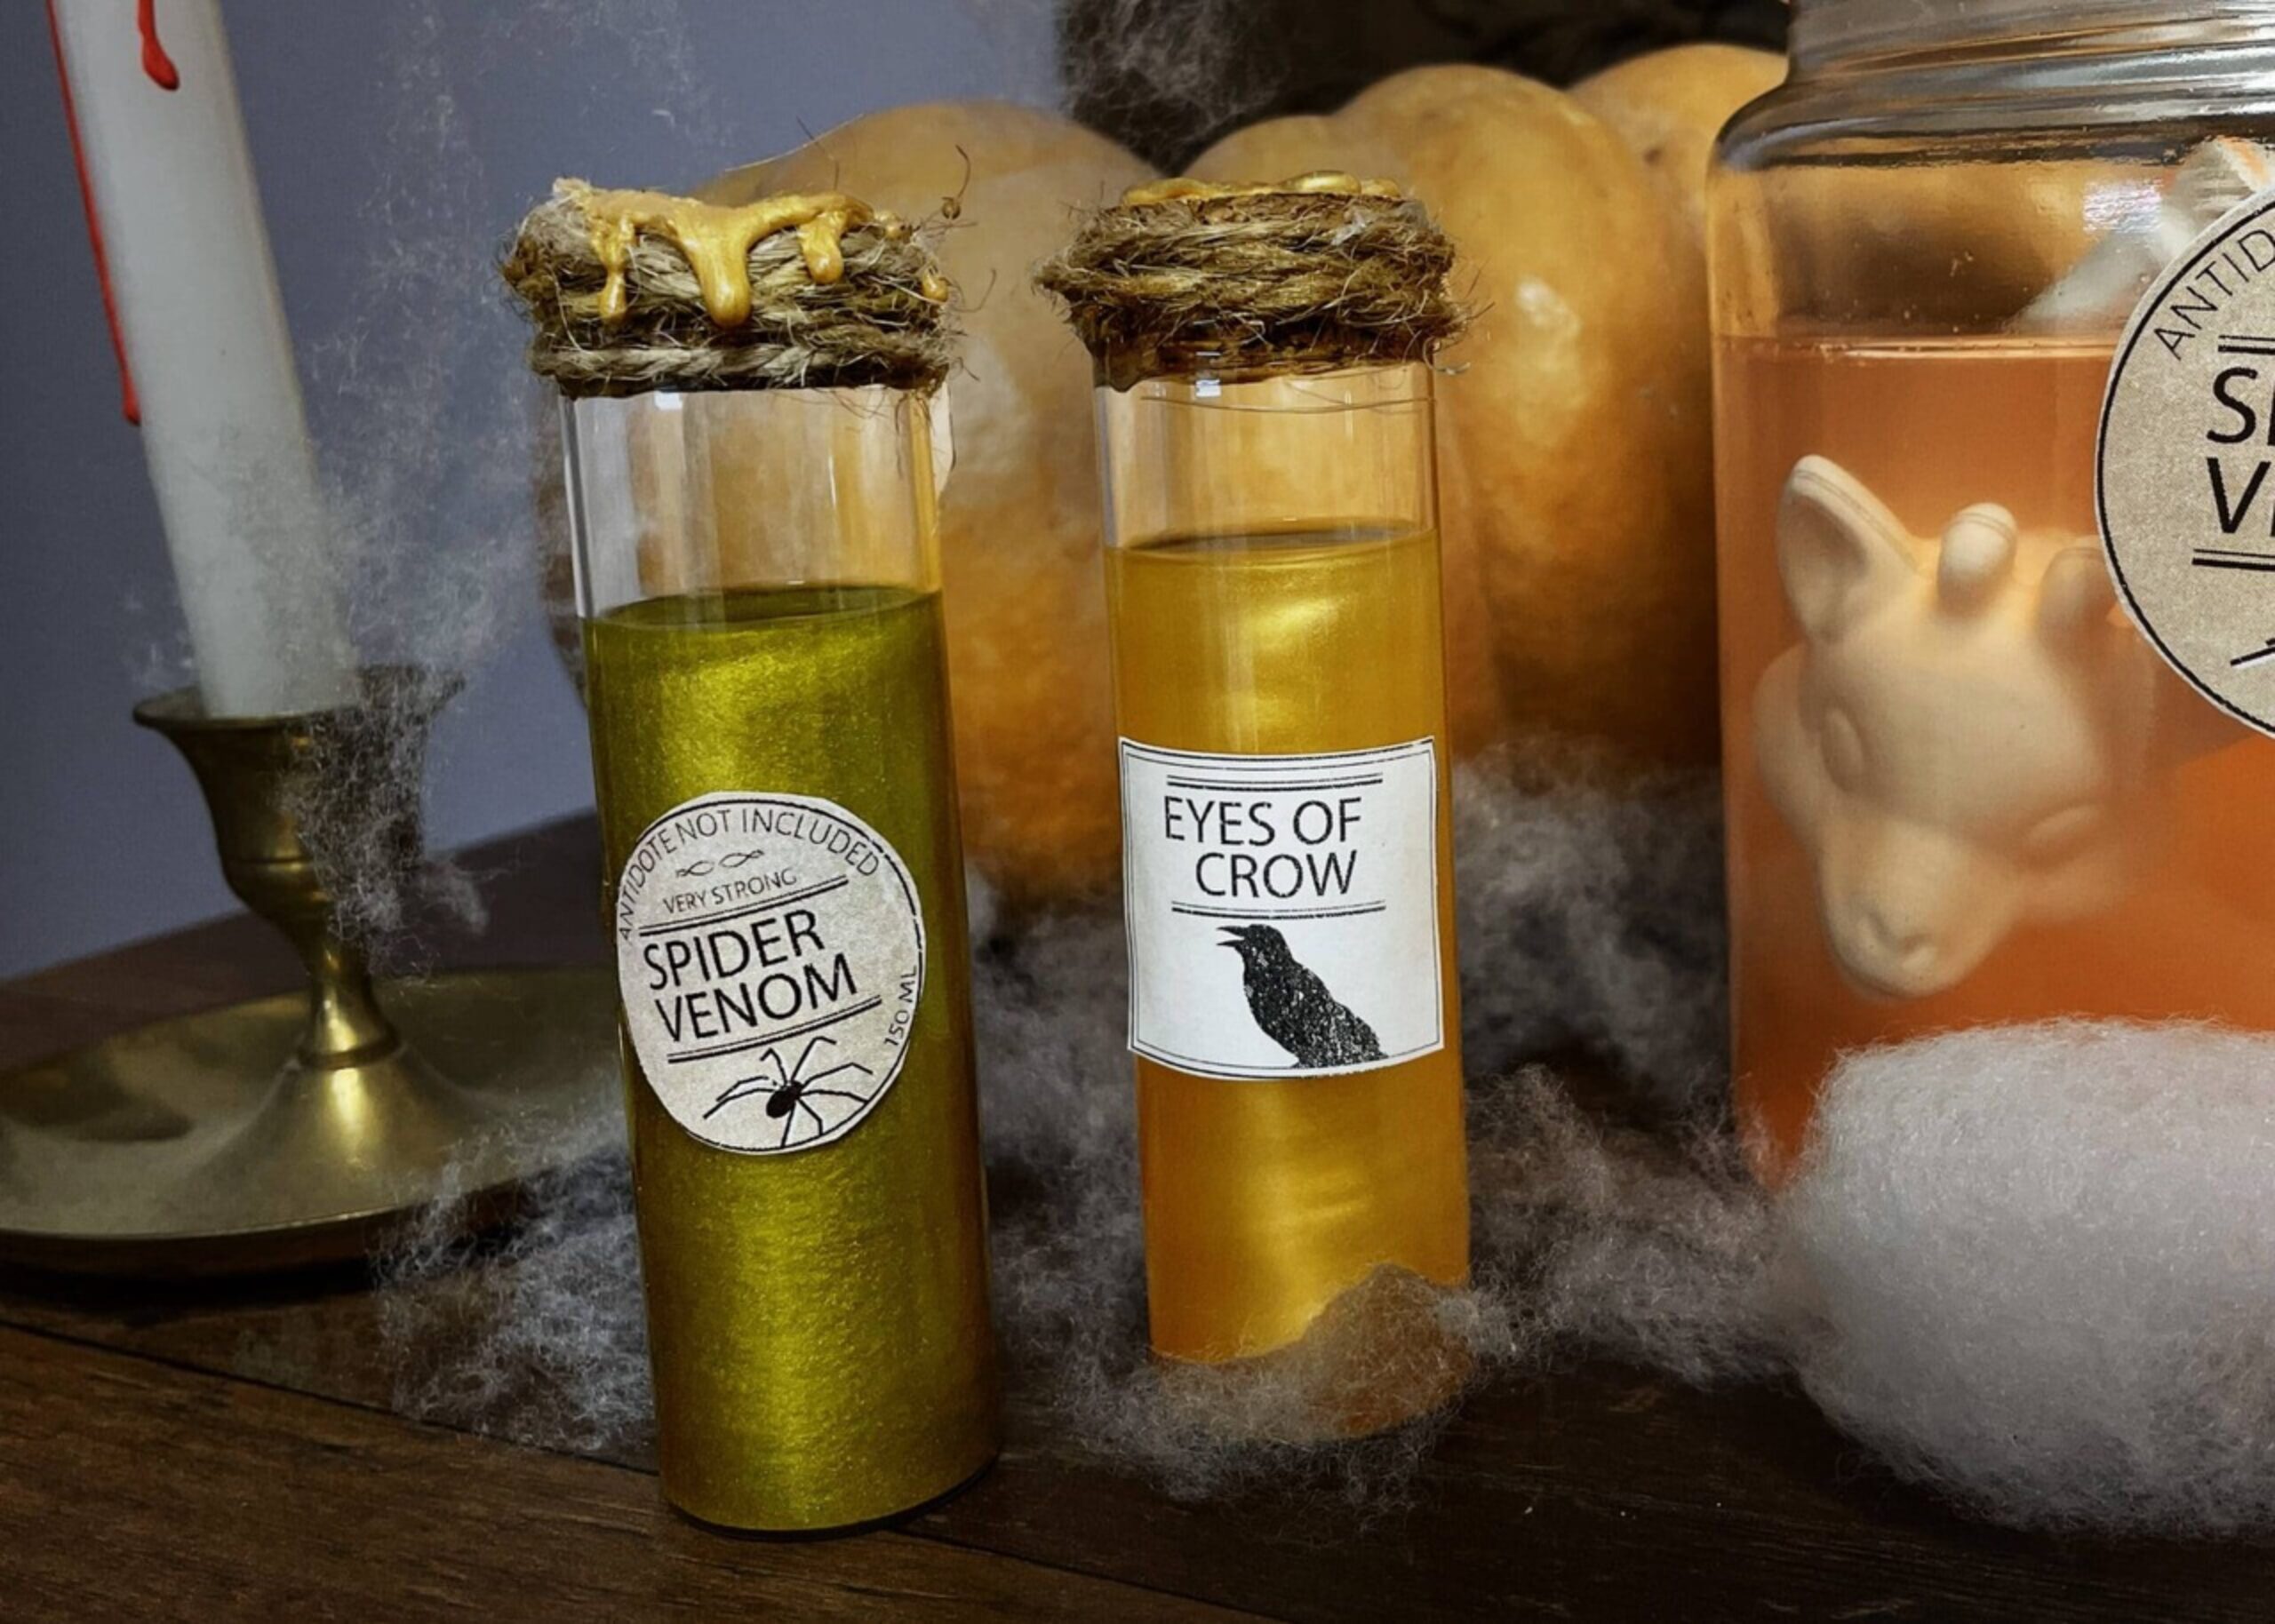 DIY Harry Potter : Potion Magique d'Halloween